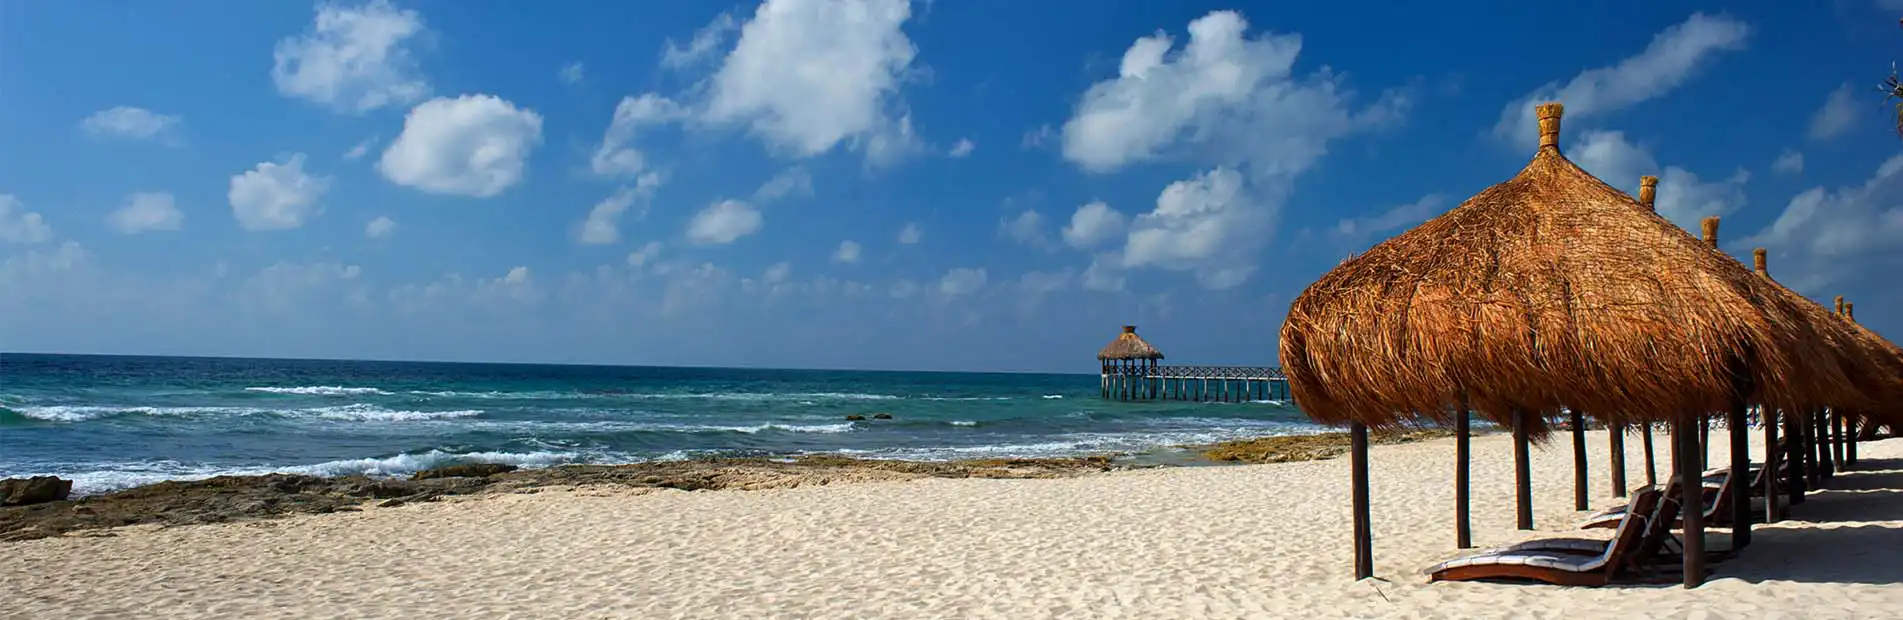 Perfect blue beach at Vidanta Riviera Maya